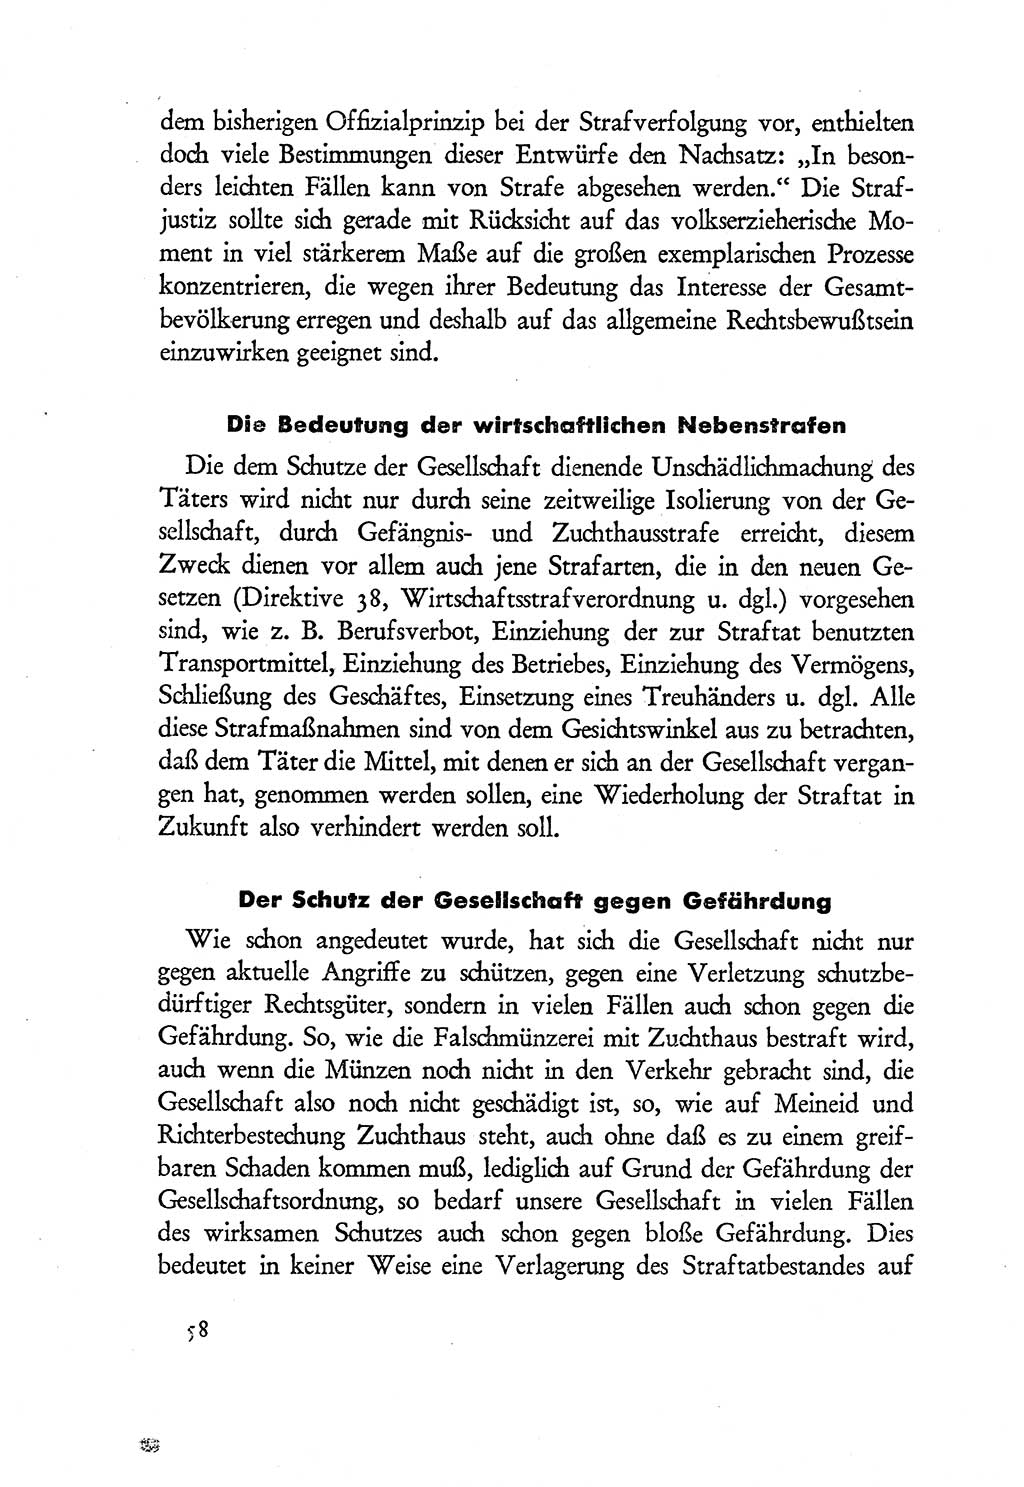 Probleme eines demokratischen Strafrechts [Sowjetische Besatzungszone (SBZ) Deutschlands] 1949, Seite 58 (Probl. Strafr. SBZ Dtl. 1949, S. 58)